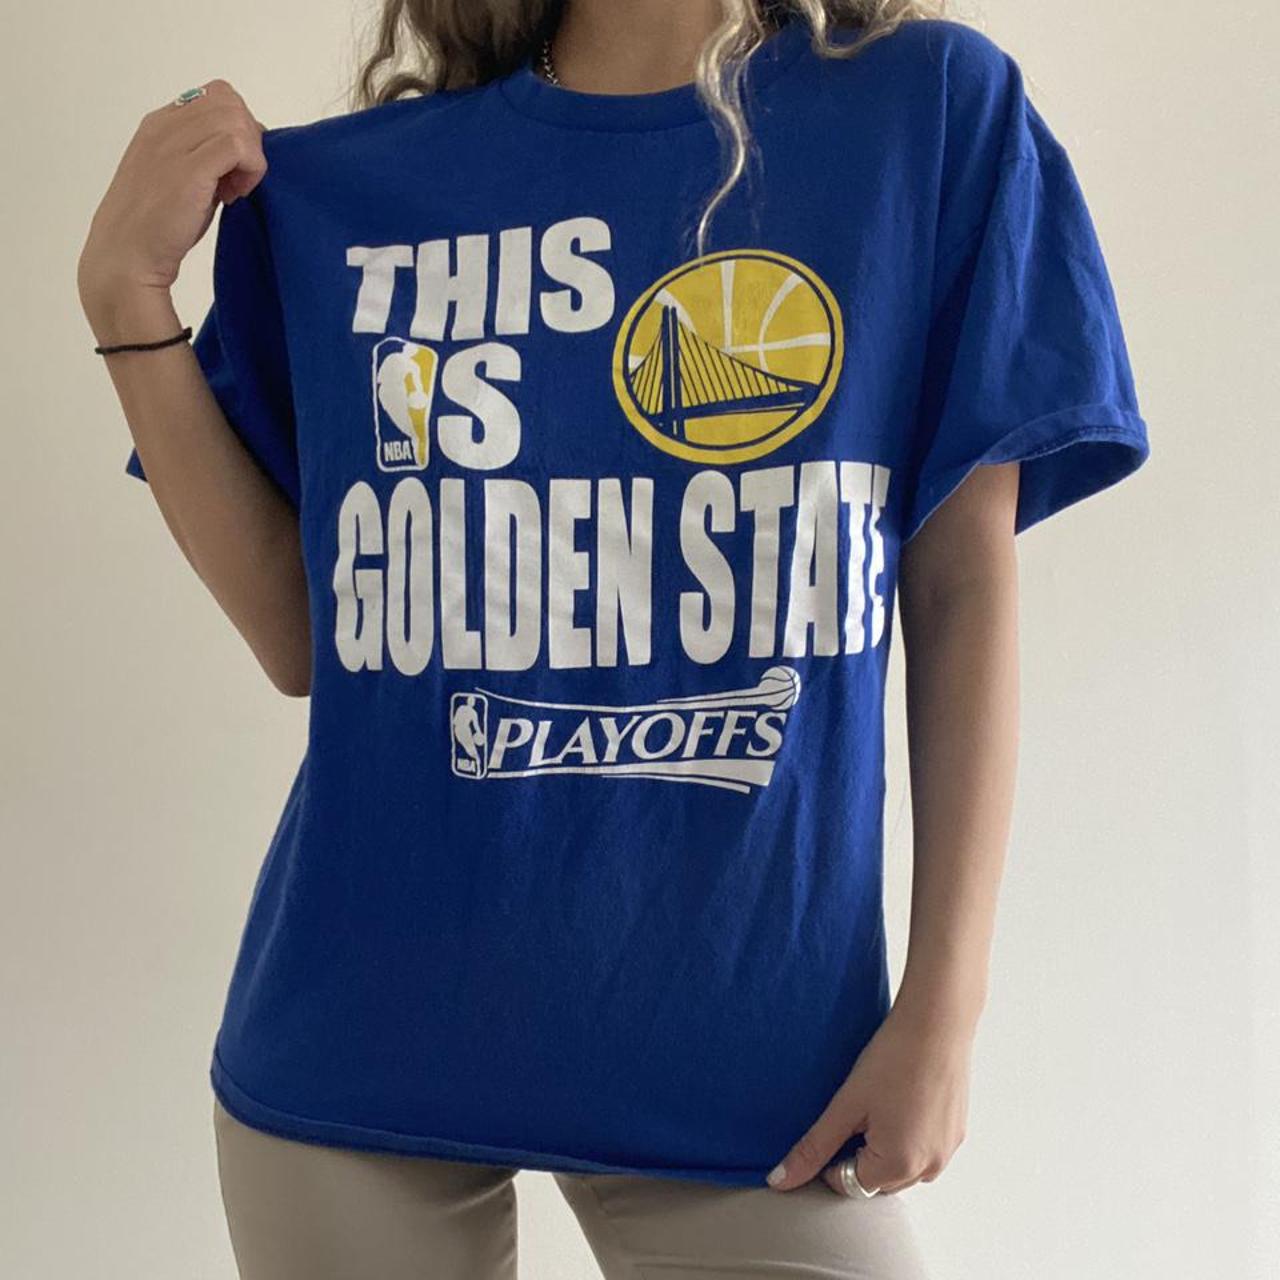 NBA Men's T-Shirt - Blue - S